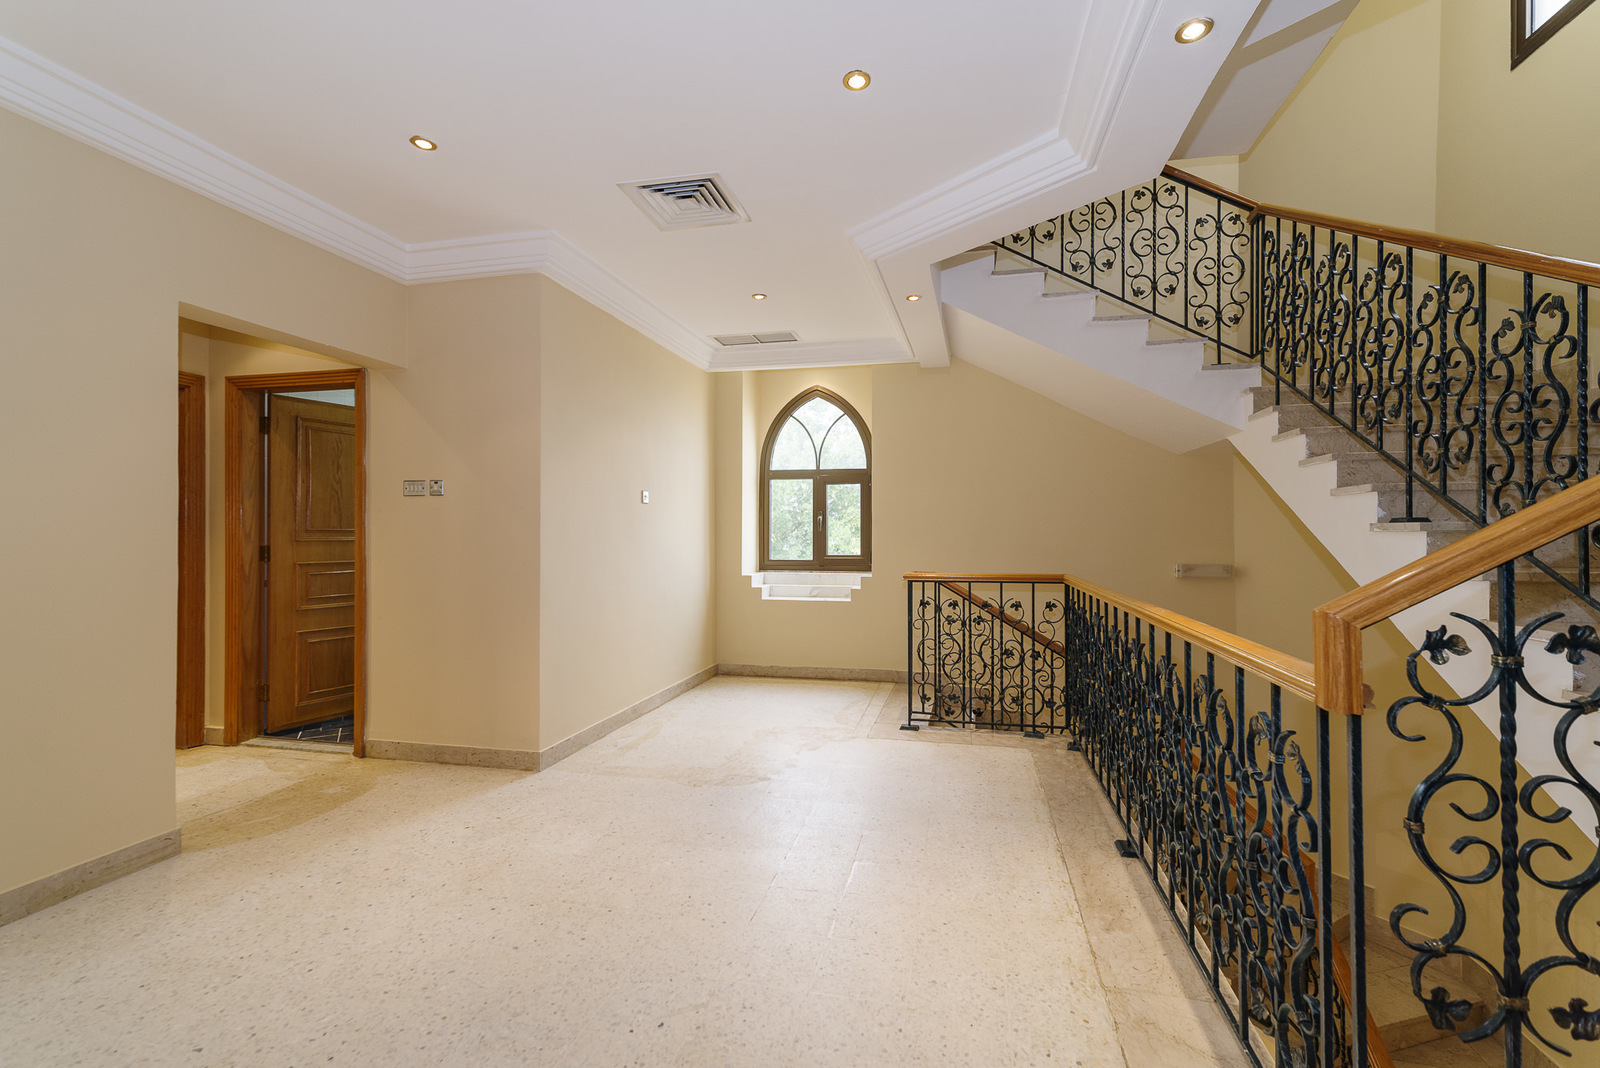 Abu Al Hasania – great, older, unfurnished, triplex apartment w/swimming pool